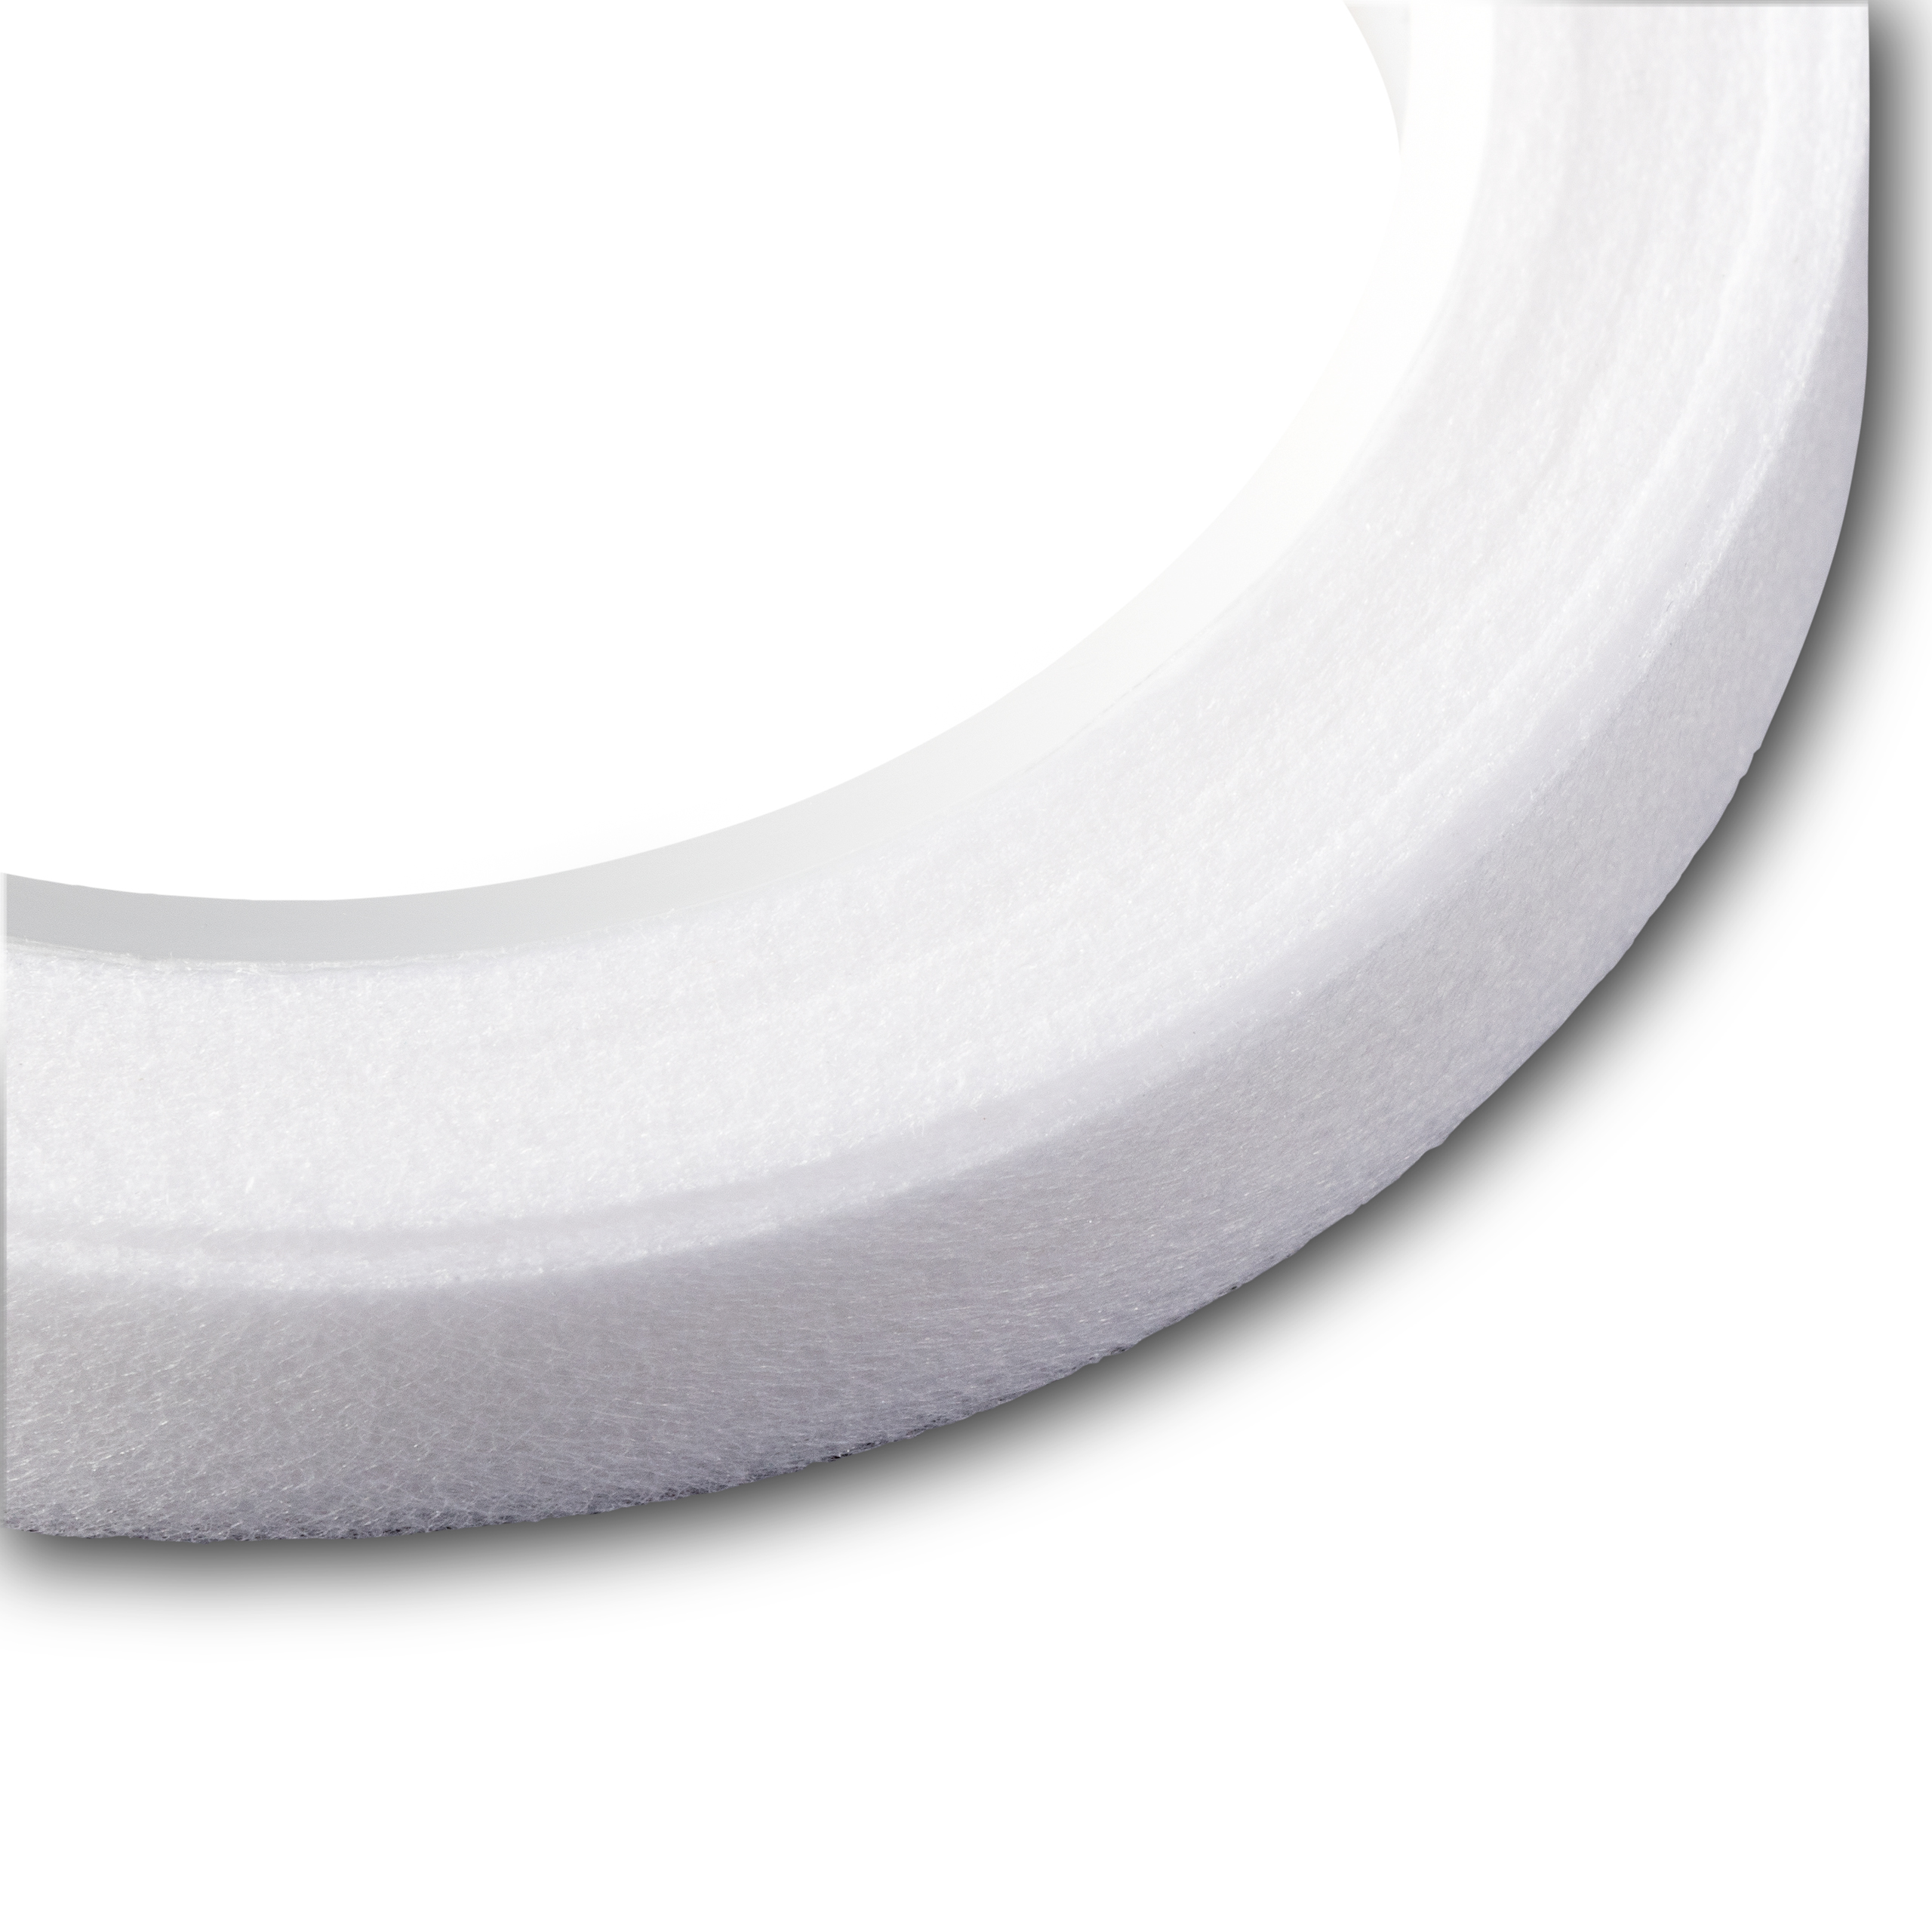 Seam tape interfacing 10 mm white, 10 m